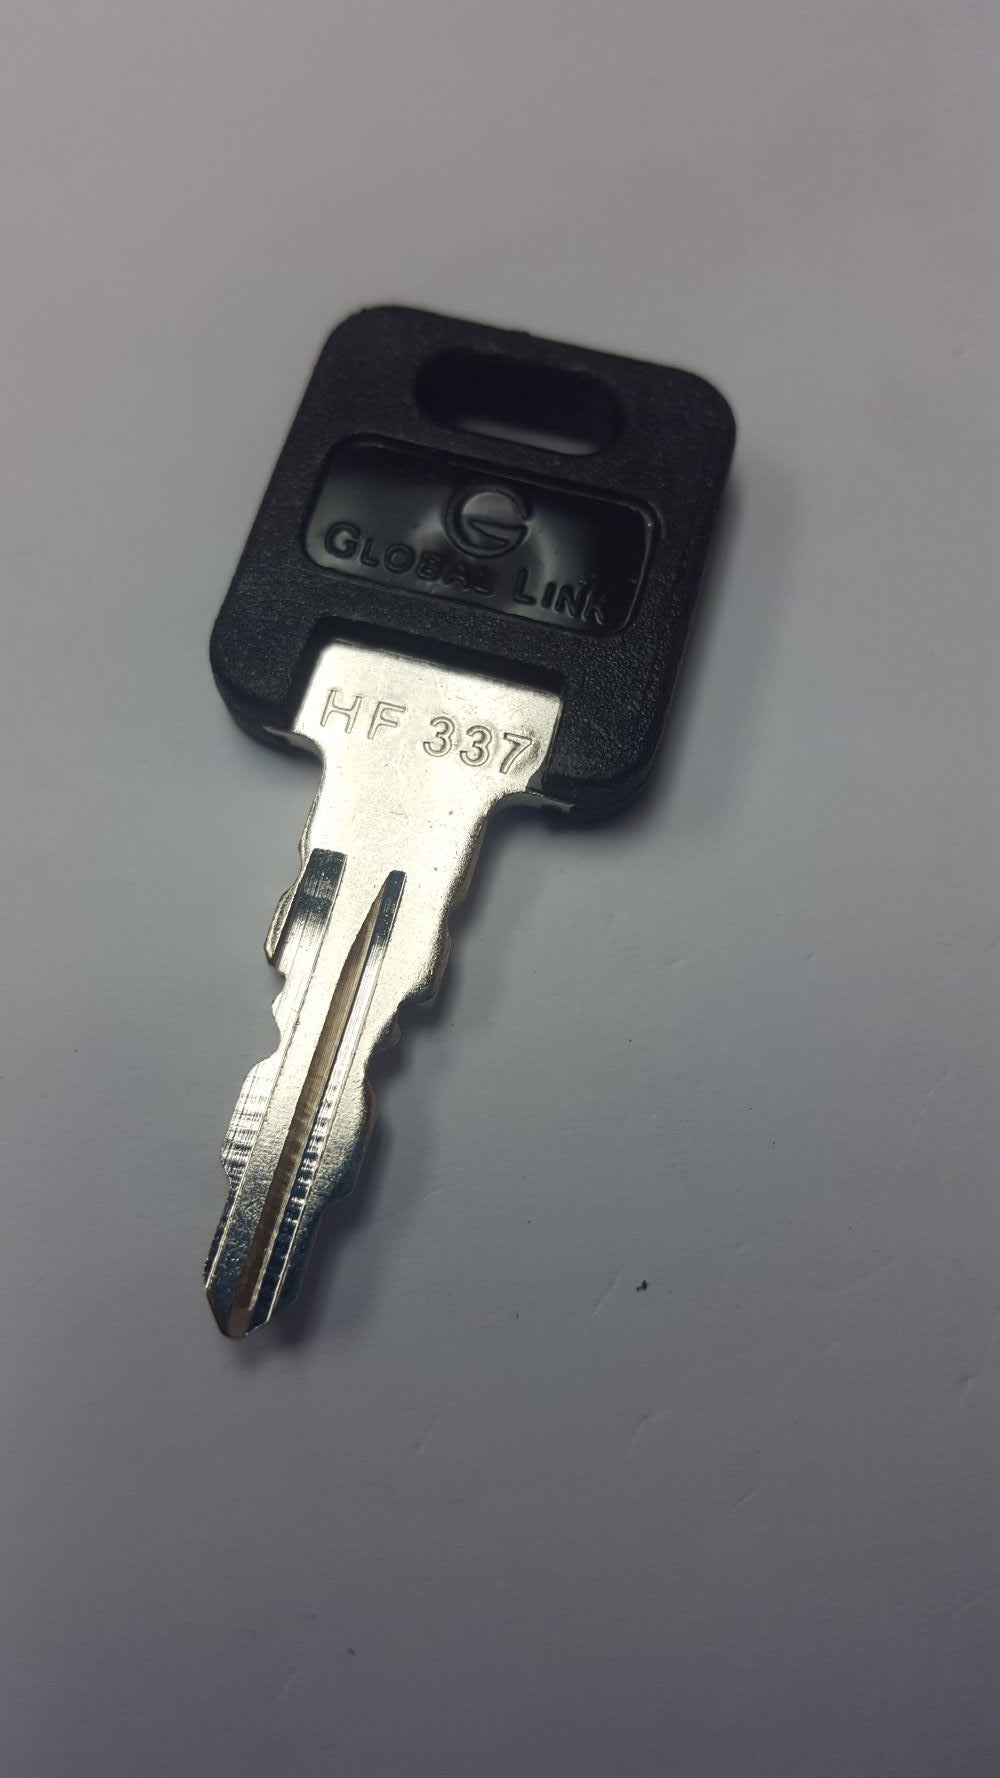 CPG KEY-HF-337 Pre-cut Stamped FIC Replacemnt HF337 Key